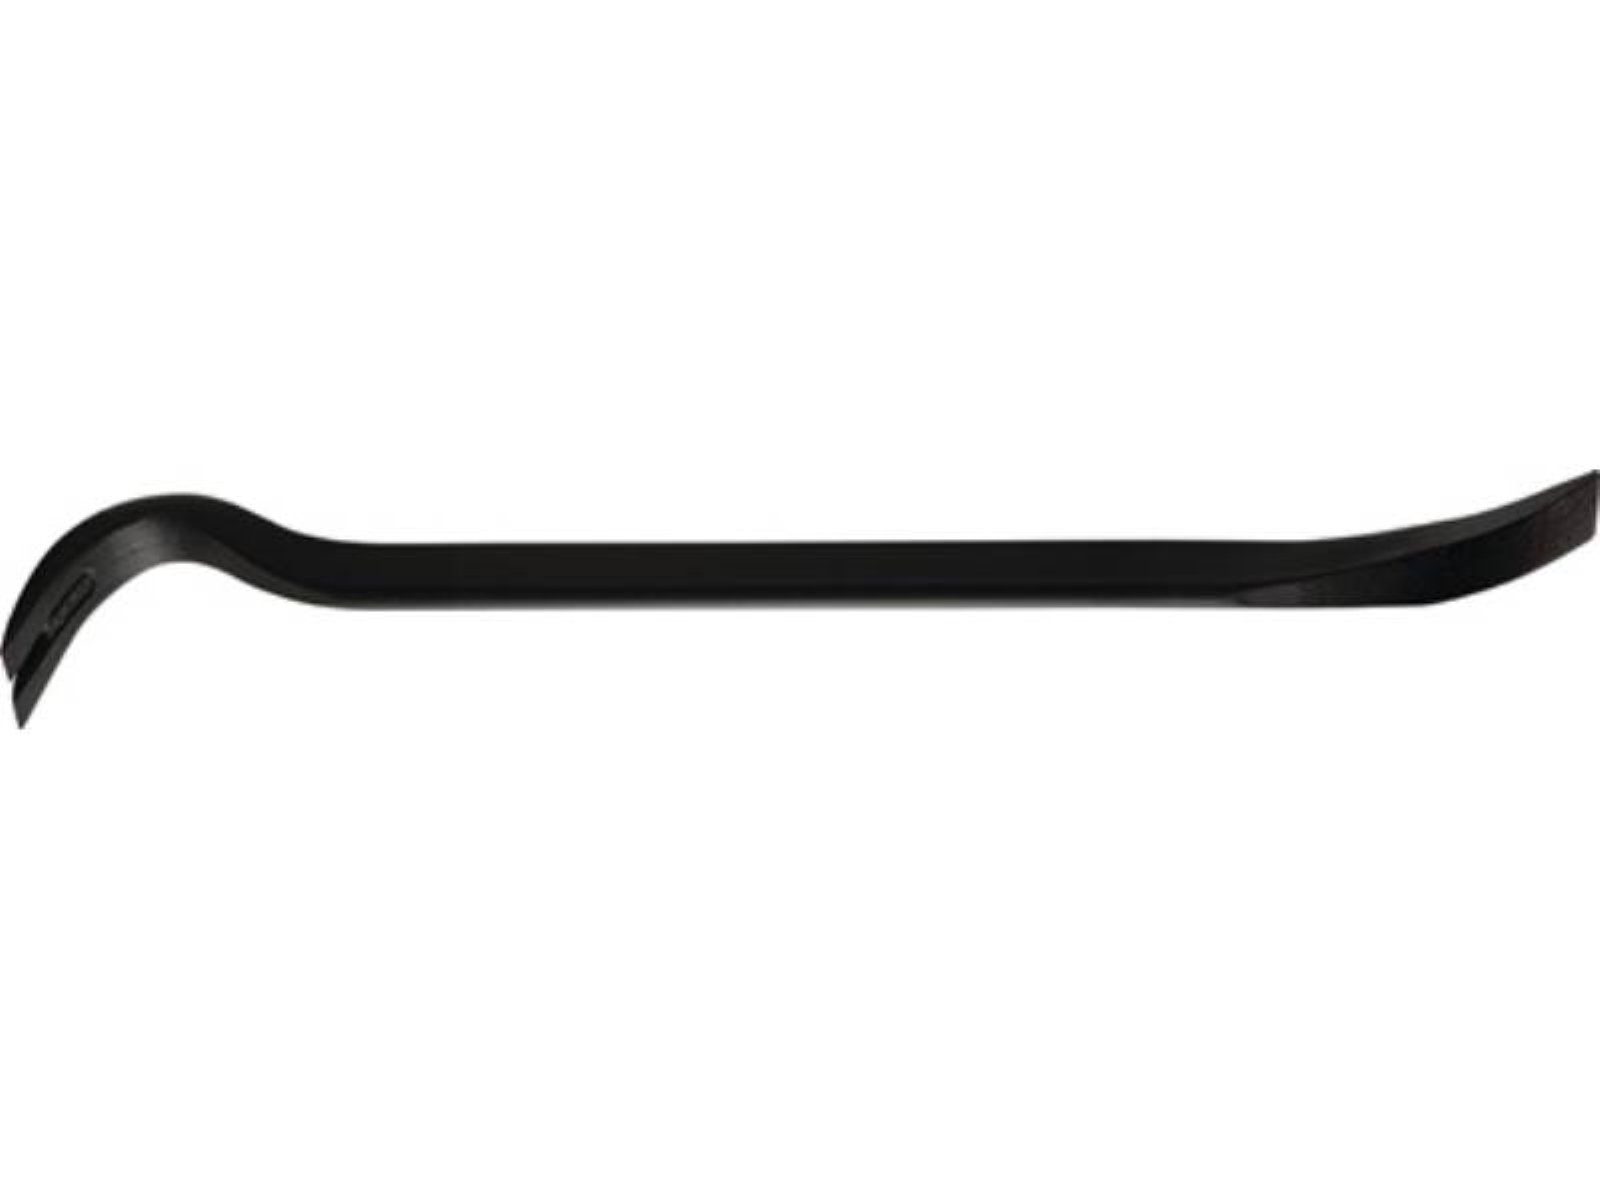 Peddinghaus Nageleisen Nageleisen Power Bar Gesamtlänge 350 mm, ovaler Korpus ovale Form mit